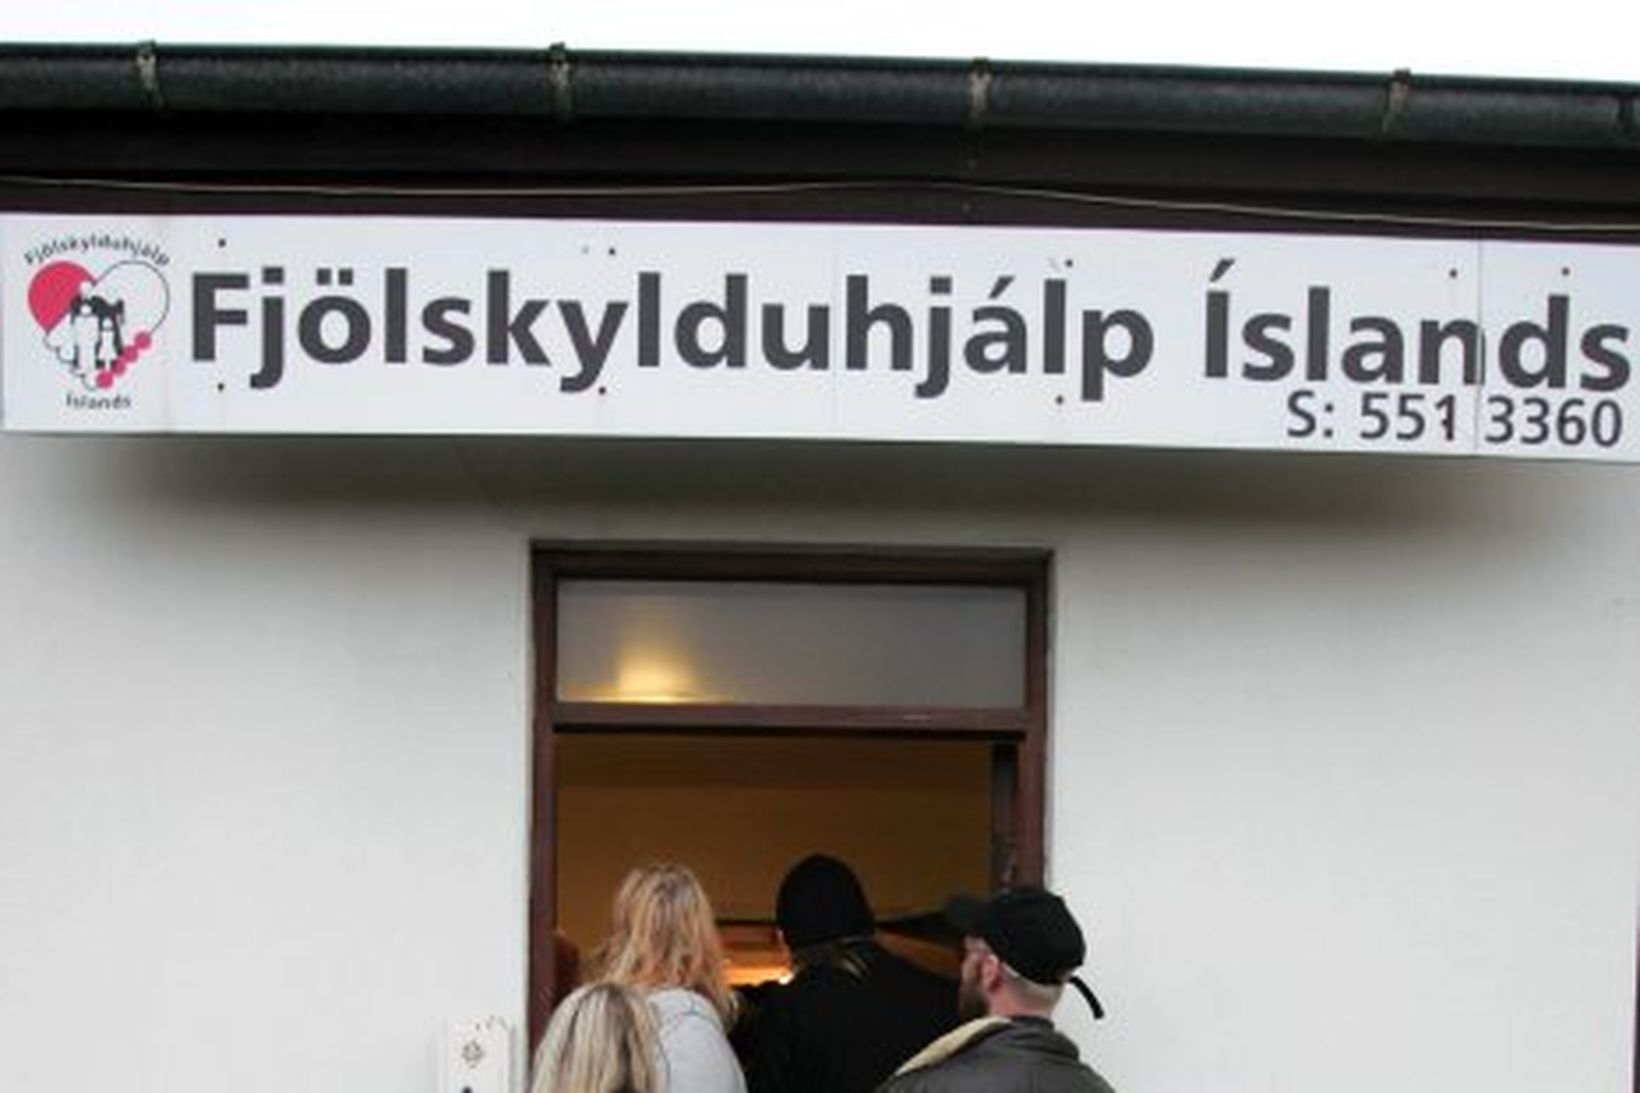 Frá Fjölskylduhjálp Íslands.